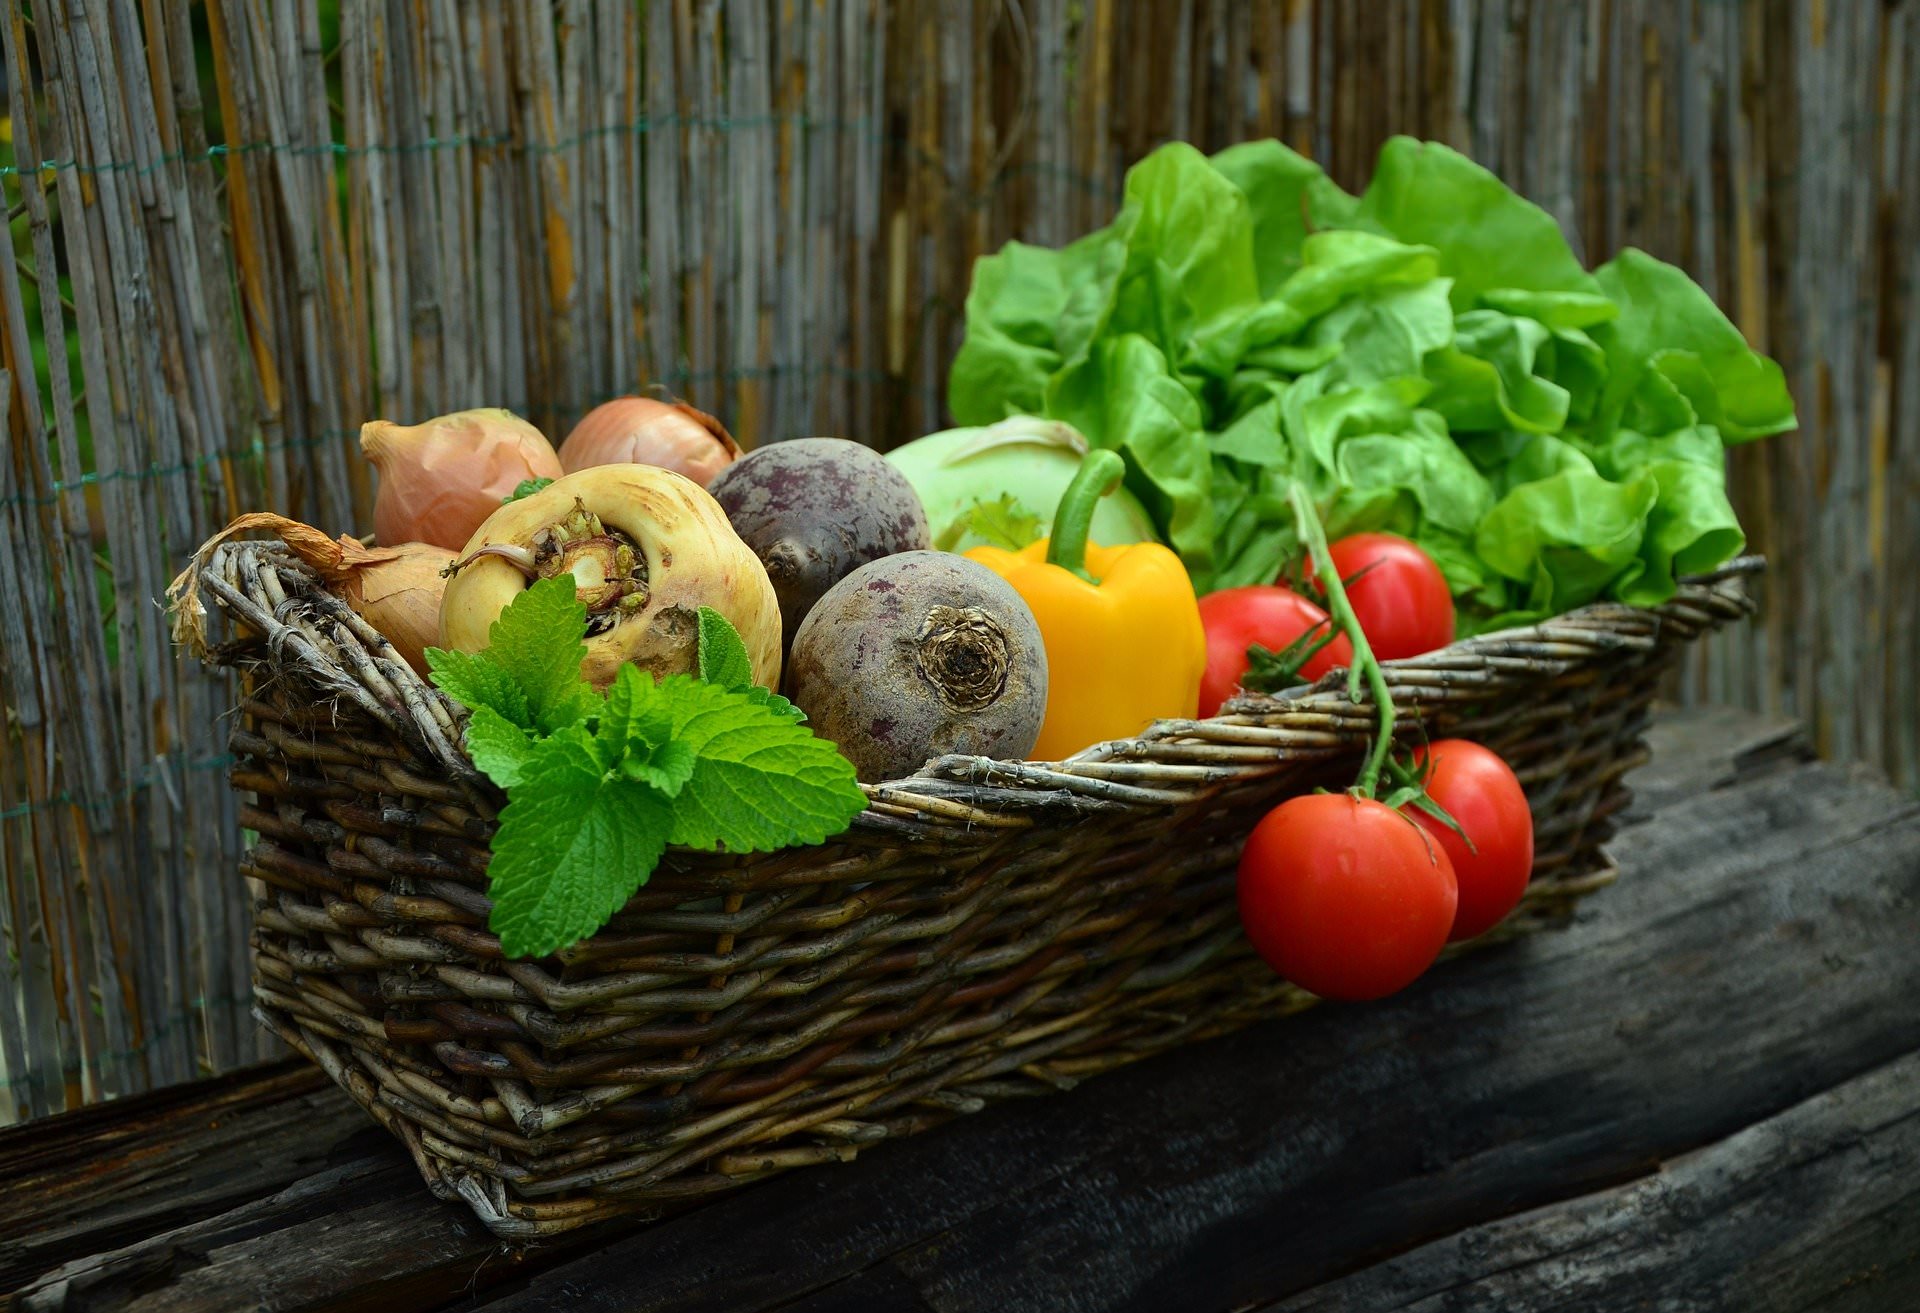 zdrava-hrana-povrce-pixabay.jpg